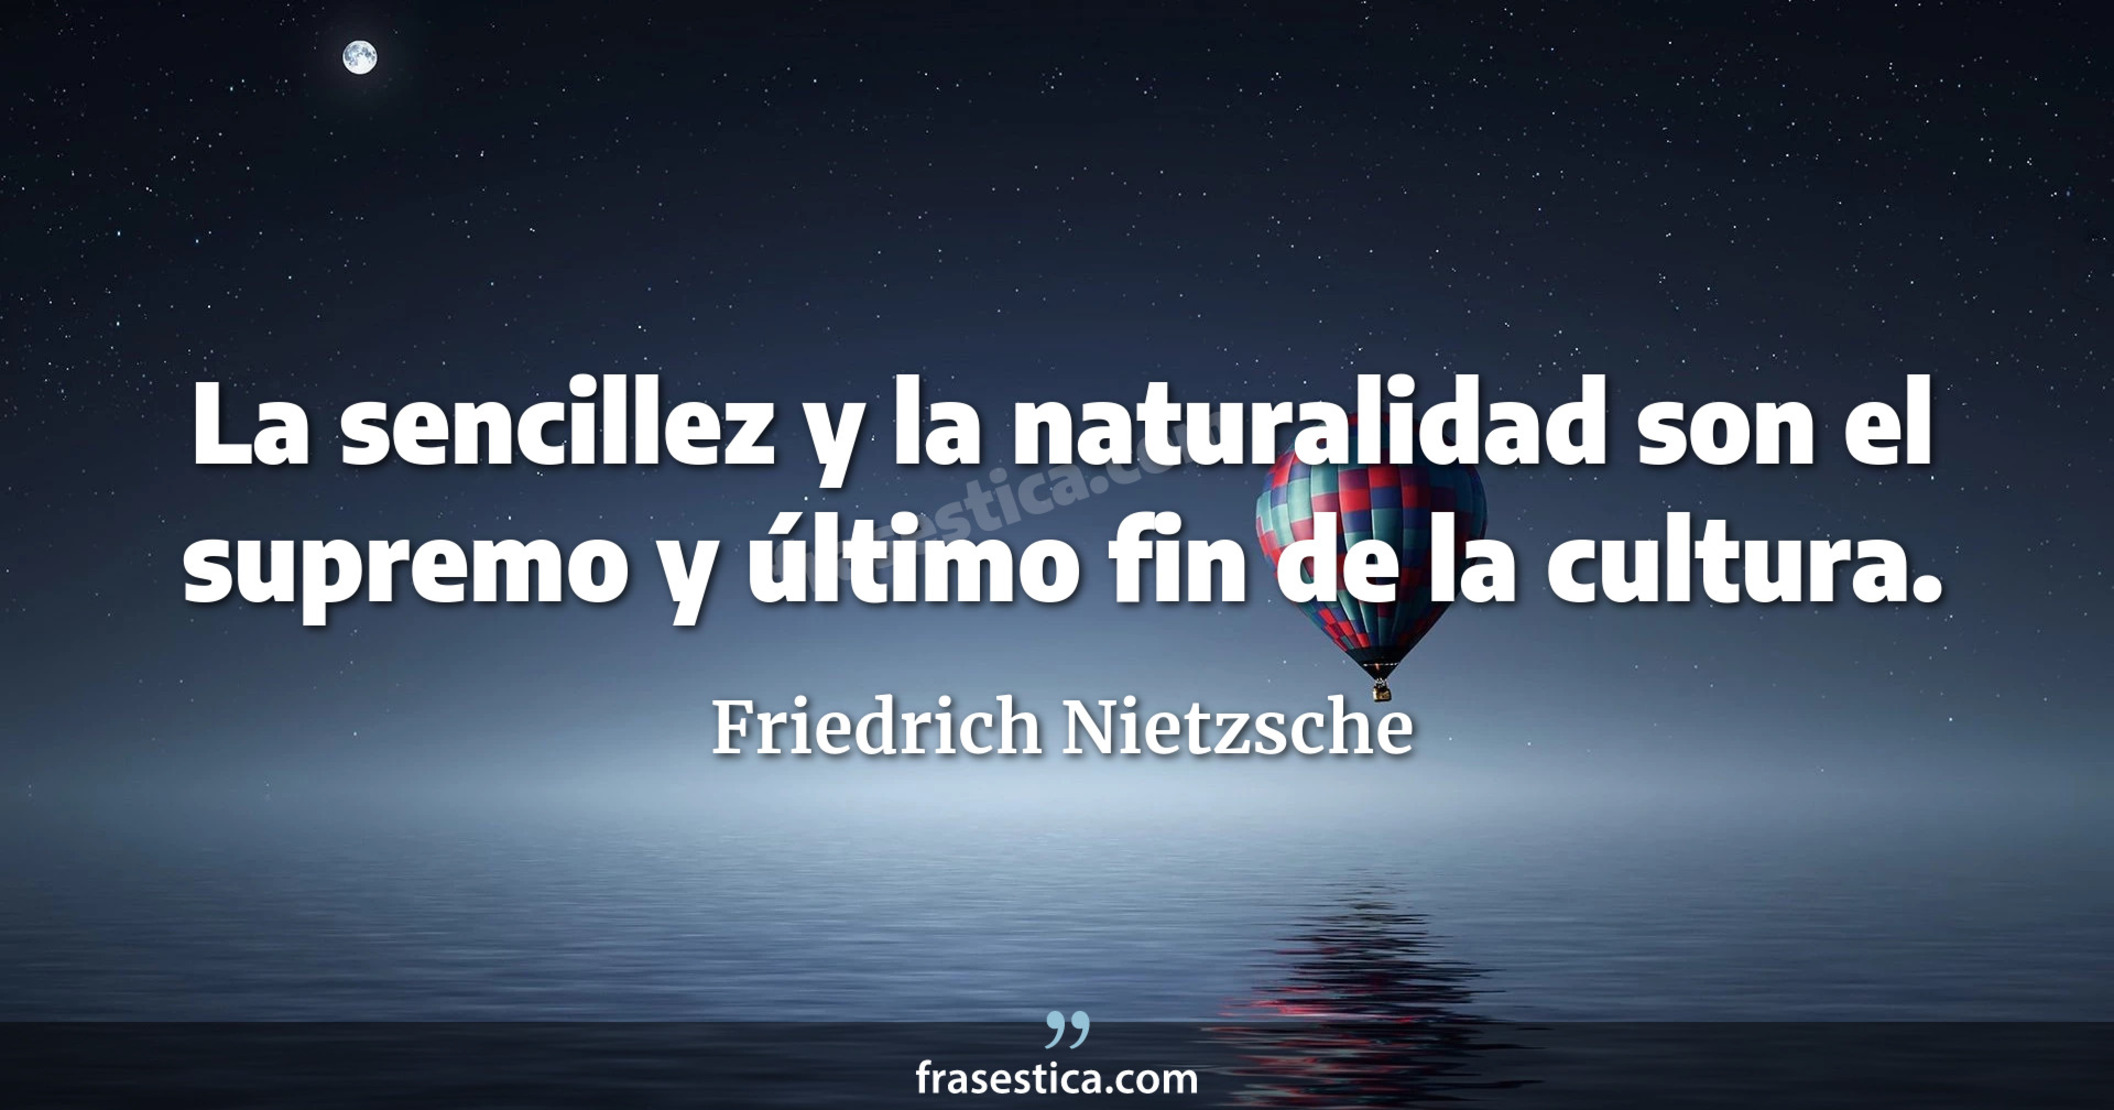 La sencillez y la naturalidad son el supremo y último fin de la cultura. - Friedrich Nietzsche